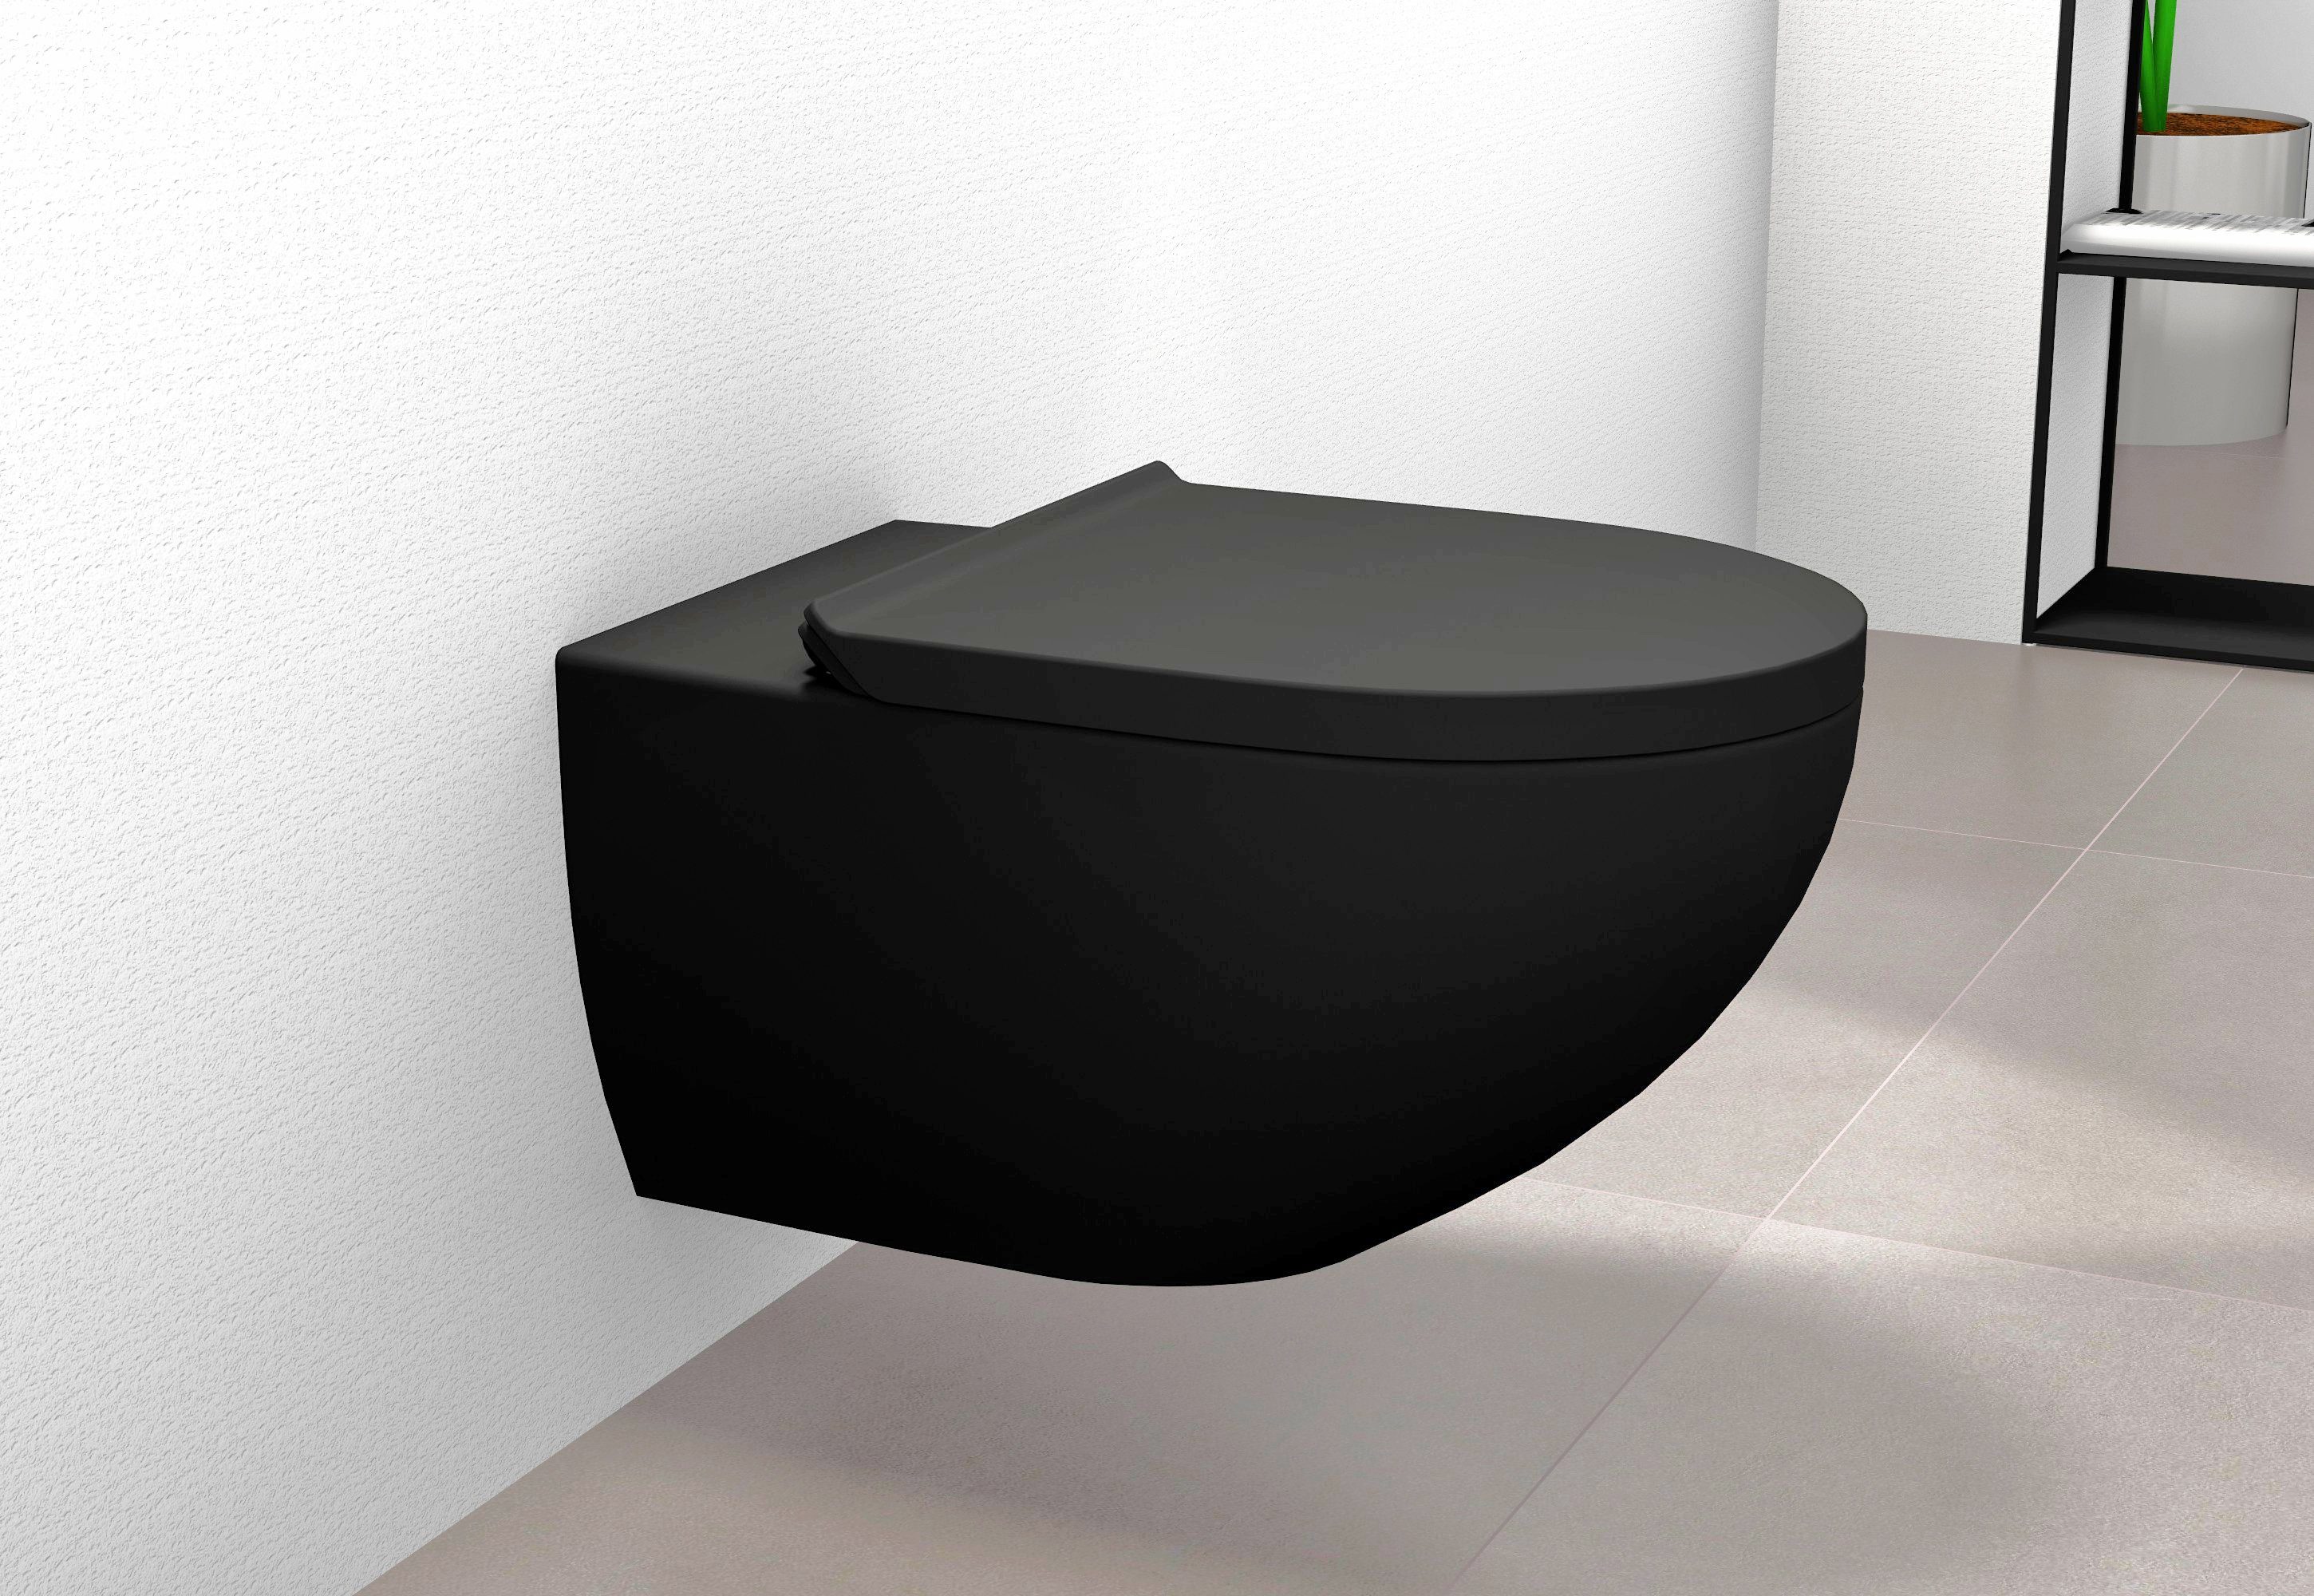 Bernstein Tiefspül-WC E-9030, Wand-WC, Schwarz matt, ohne Spülrand, mit Deckel